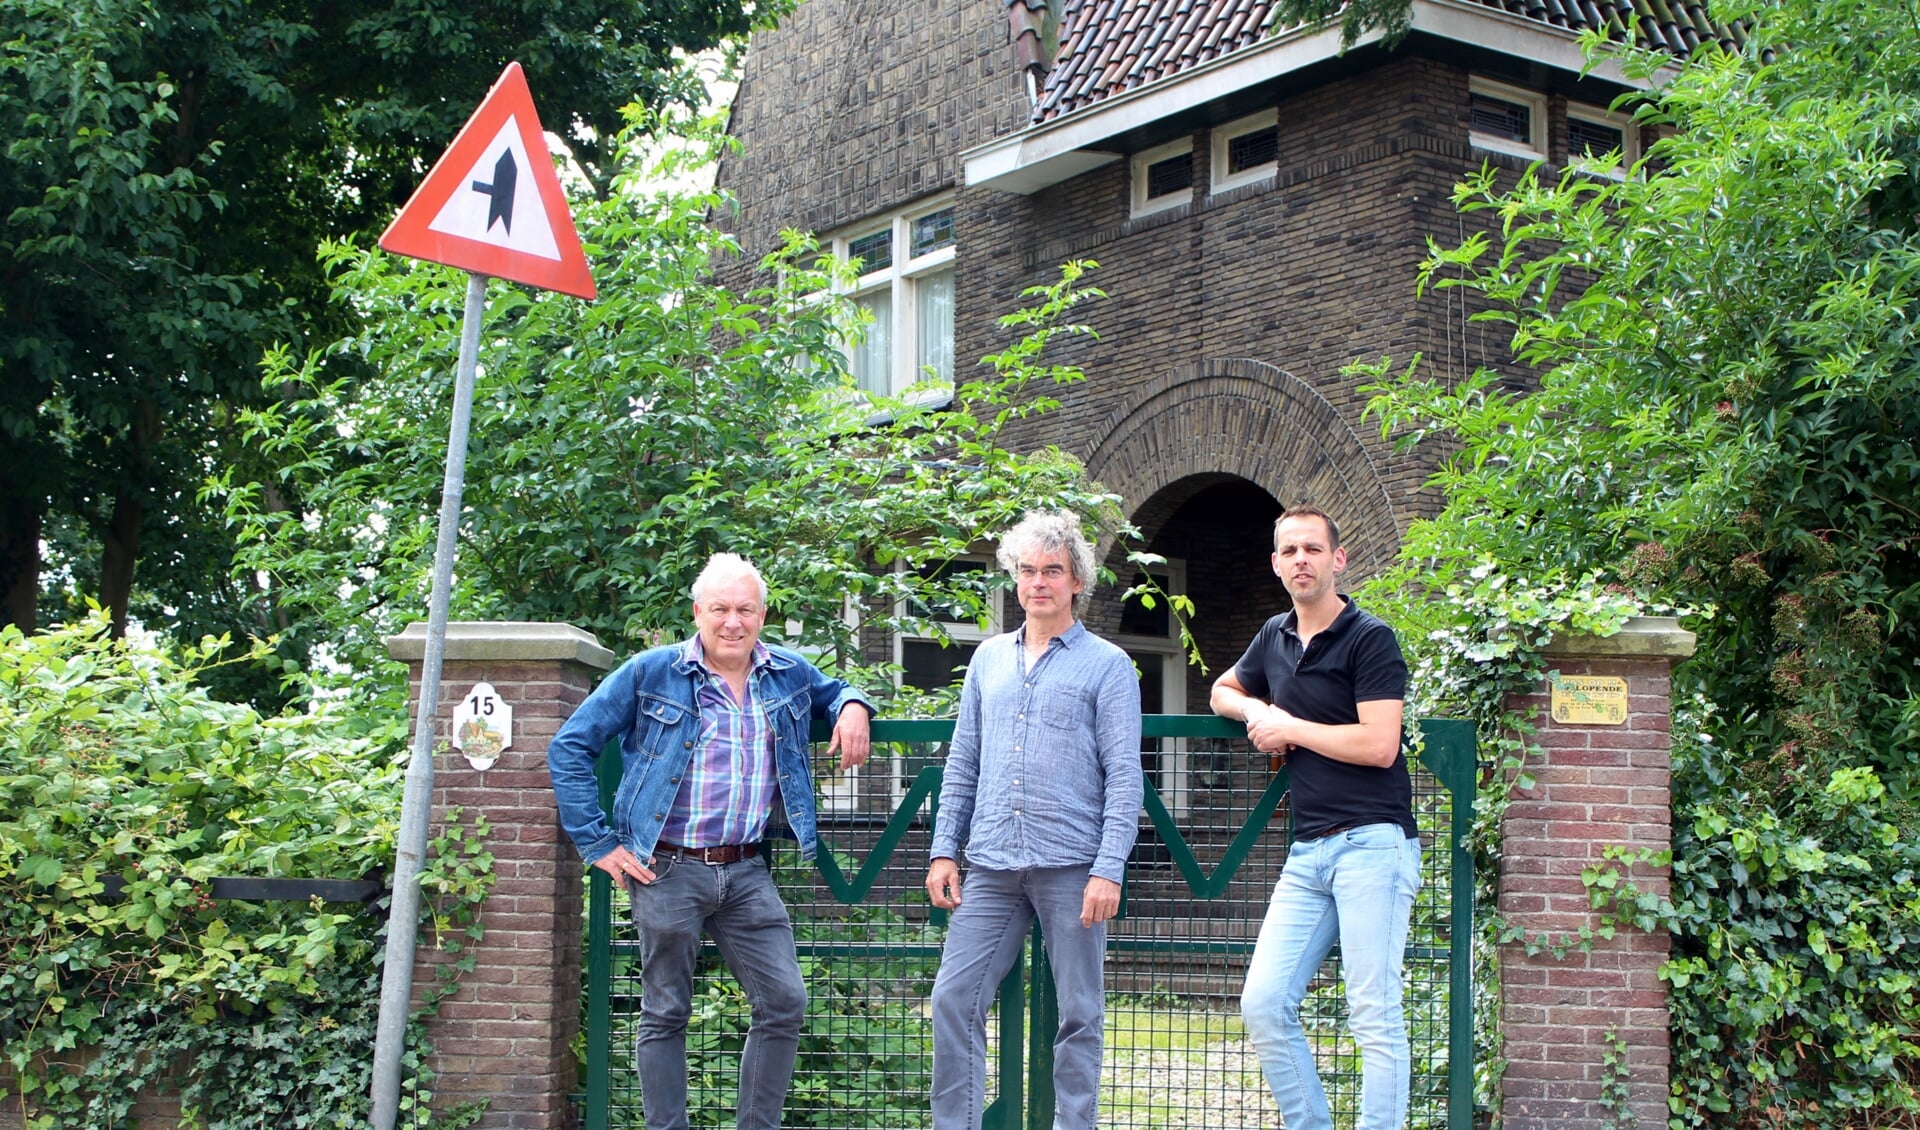 Villa van Teylingen kan het winkelgebied versterken, vinden René Driesen, Fred Booy en Sander Jongejan (vlnr): 'Een mooi oud pand in een nieuwe omgeving heeft veel meerwaarde'